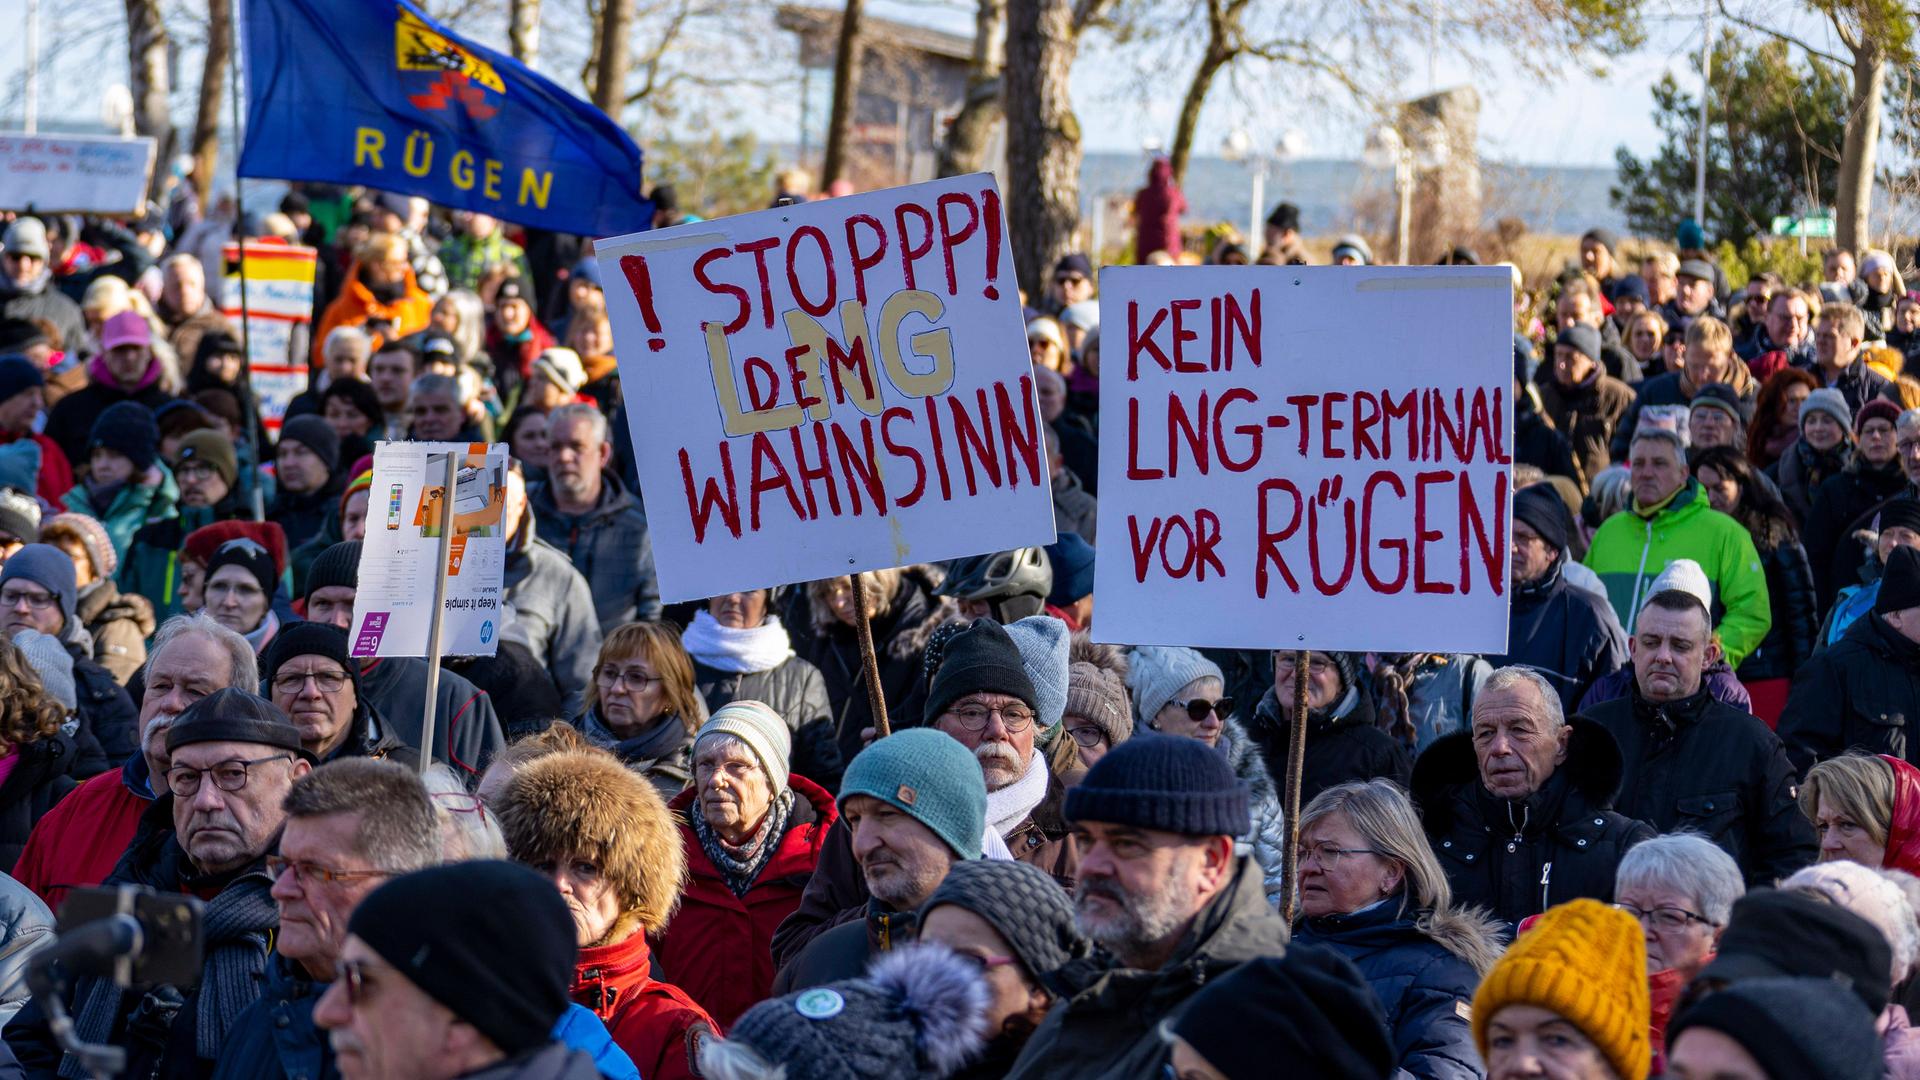 Demonstrierende auf Rügen halten Schilder hoch, auf denen steht "Kein LNG-Terminal vor Rügen" und "Stopp den LNG-Wahnsinn".